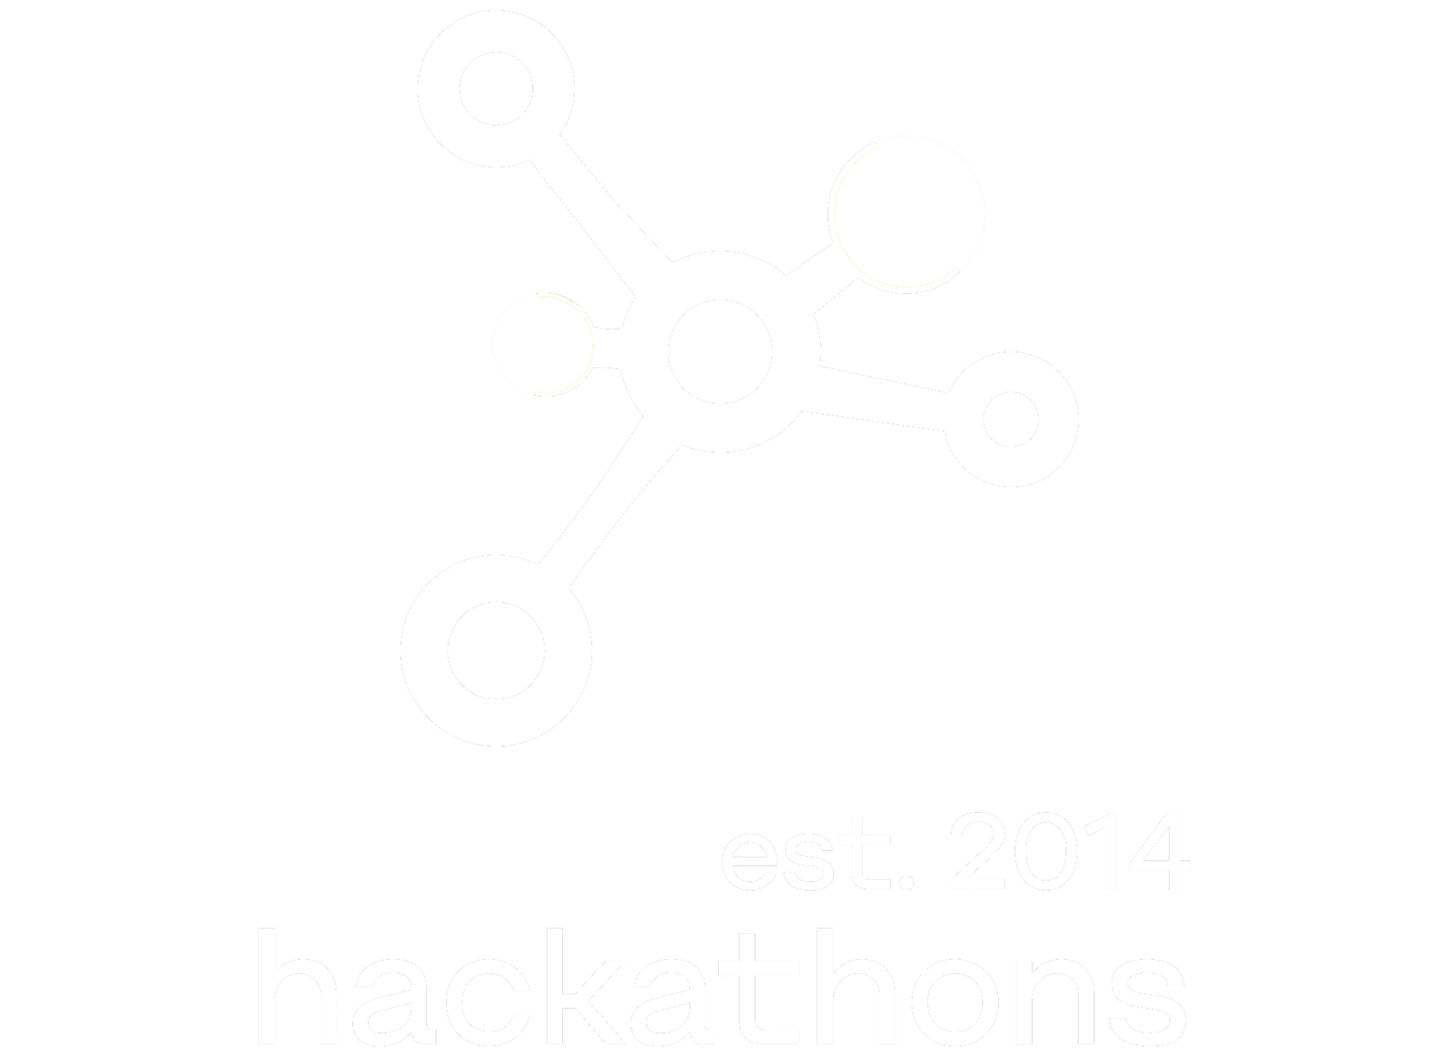 hackathons est. 2014